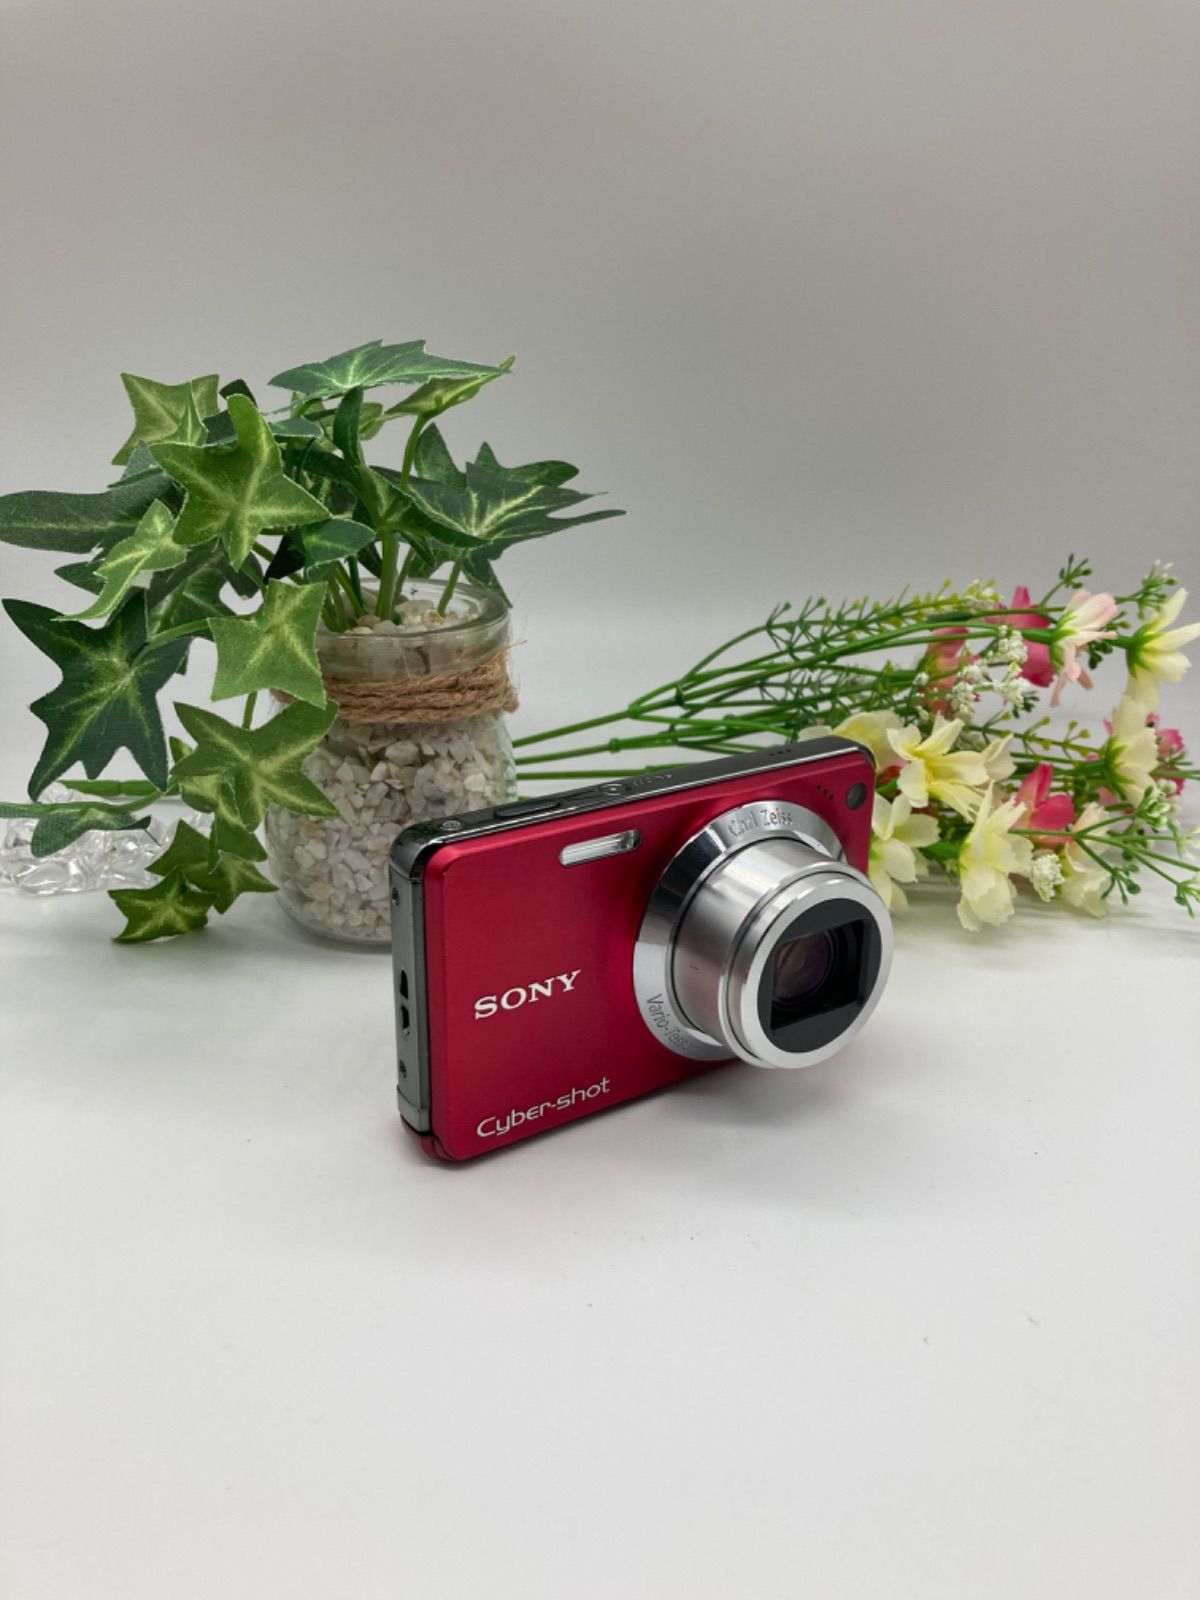 SONY Cyber-shot DSC-W270デジカメ デジタルカメラ レッド - メルカリ